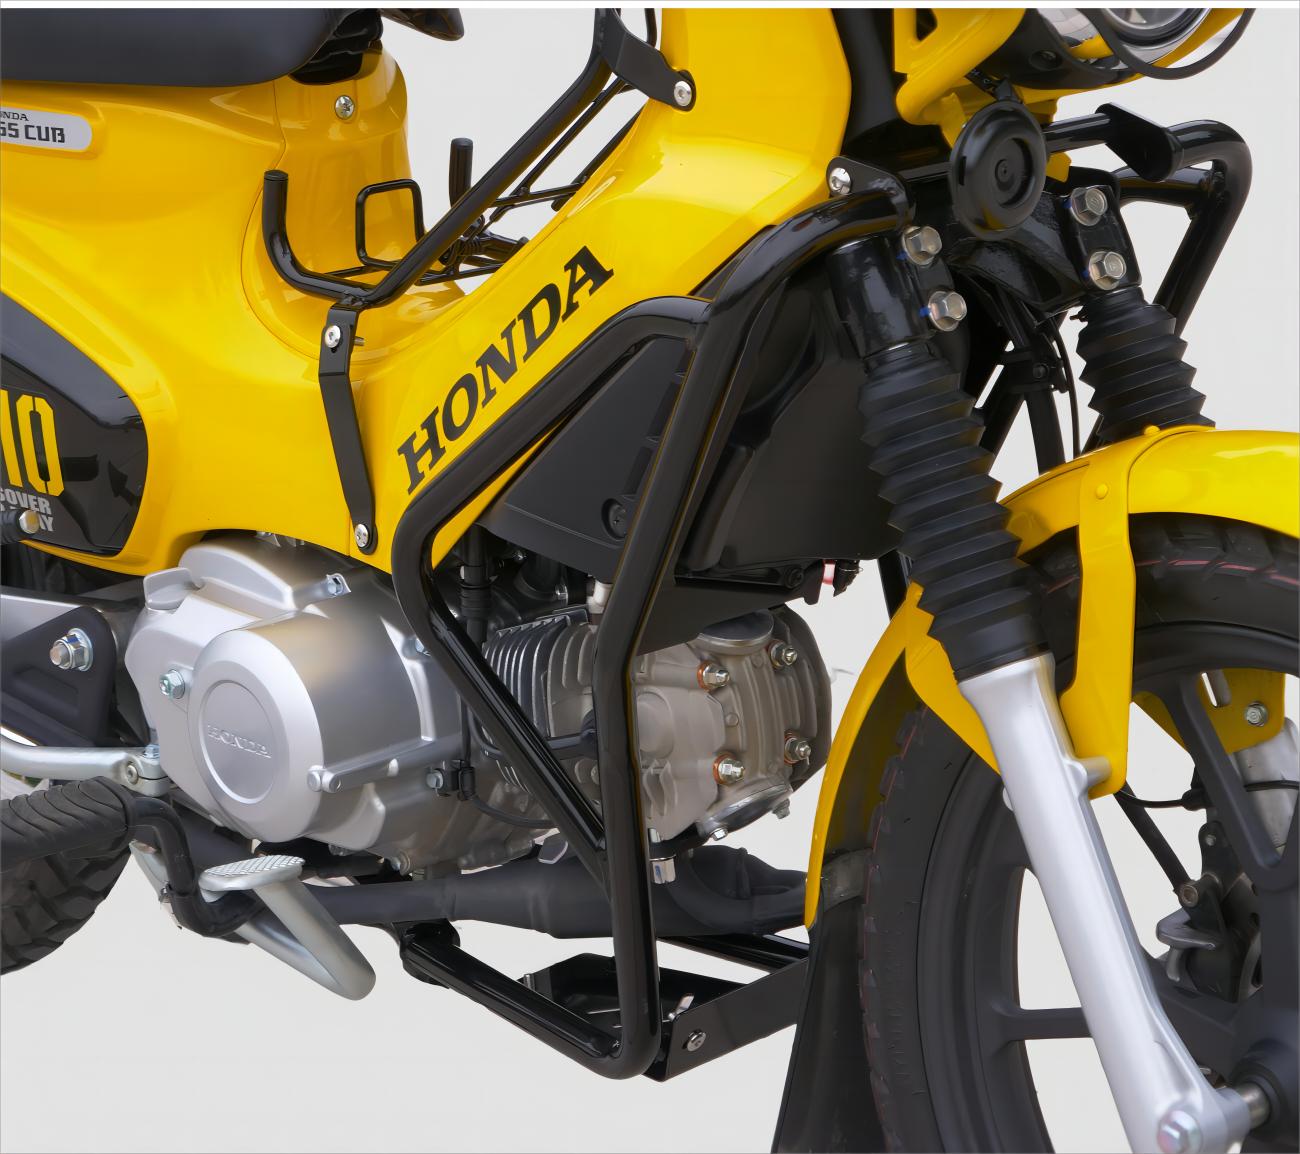 カブ クロスカブ CC110 アンダーフレームキット エンジンガードキット ブラック バイクパーツ カスタムパーツ 改造 オートバイ キャンプツーリング 保護 キット